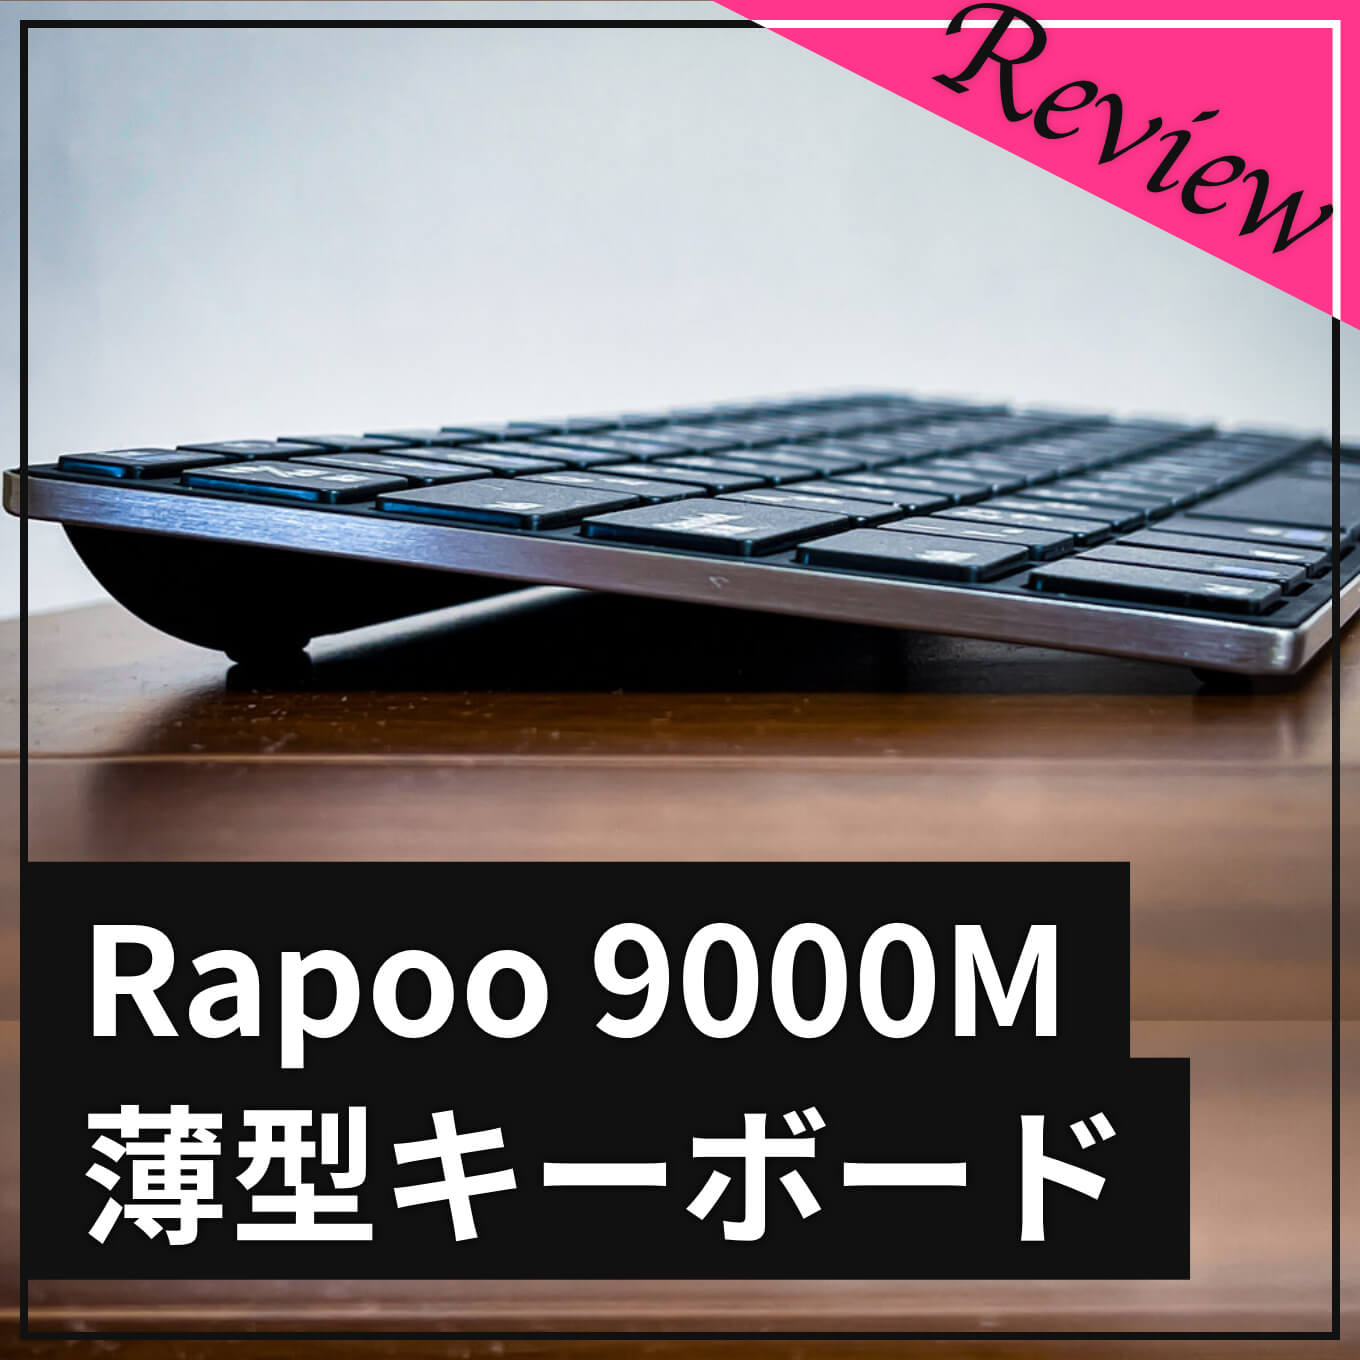 rapoo9000m-review